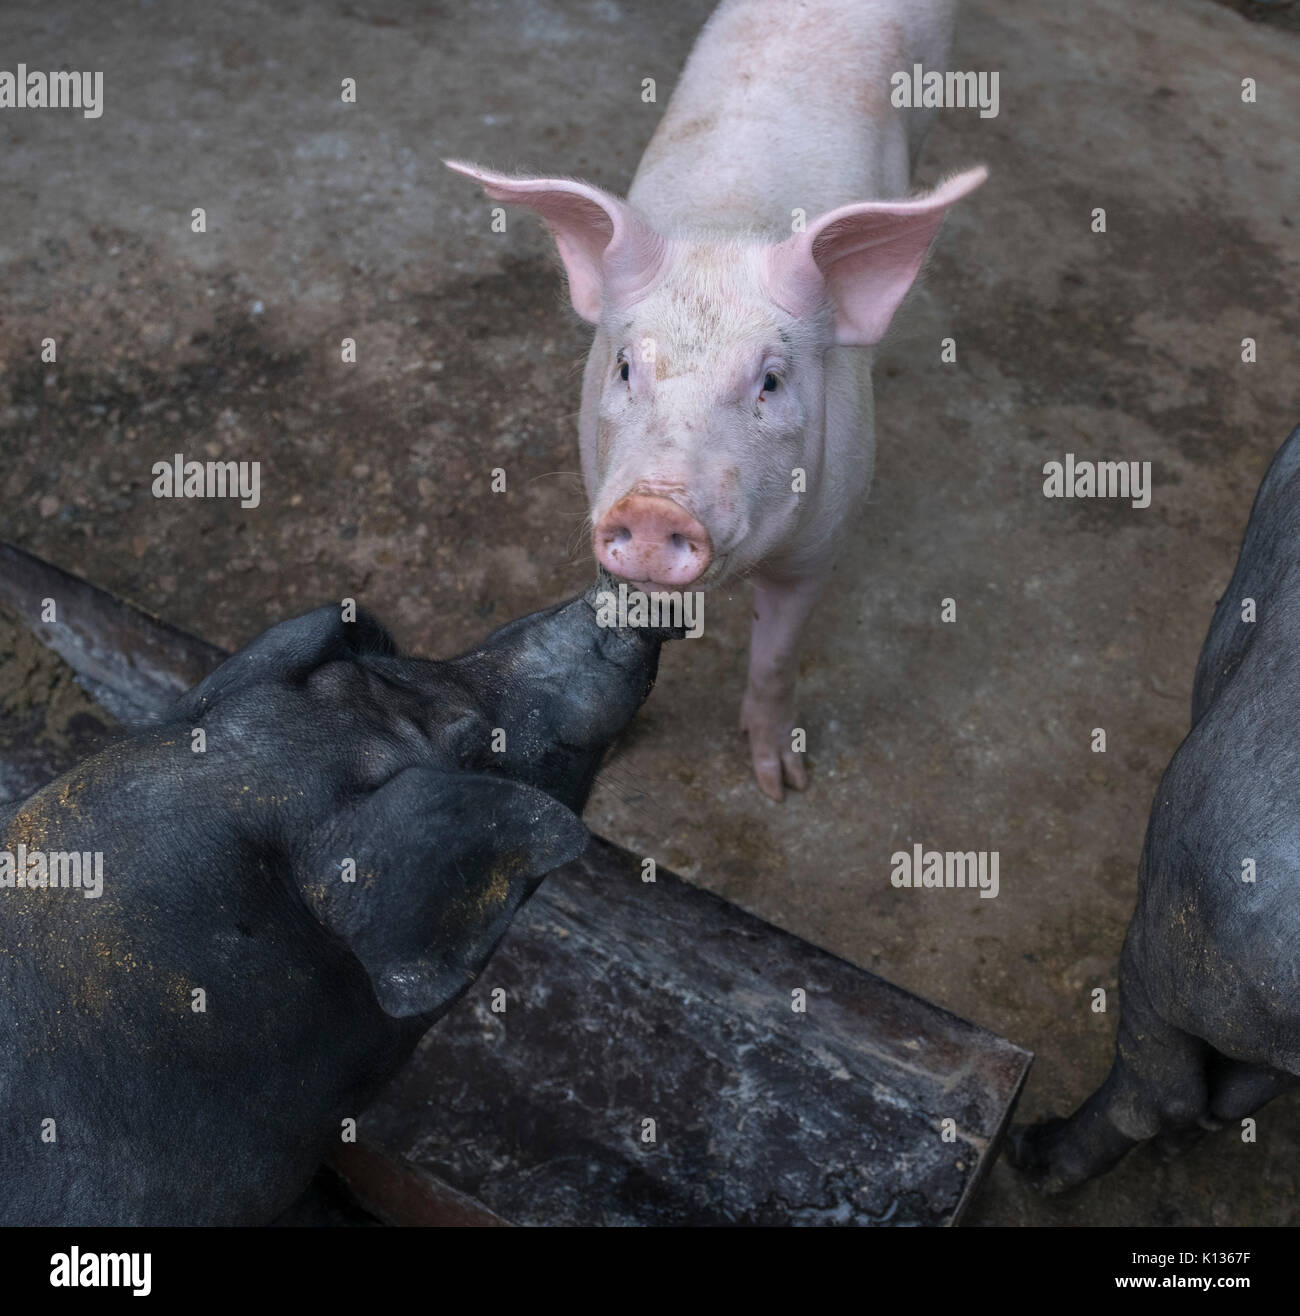 Hybrid Rasse der Schweine, die in einer inländischen Schweinefarm, Wild boar Hybridisierung mit dem Hausschwein in Huairou, Peking, China. 24-Aug-2017 Stockfoto